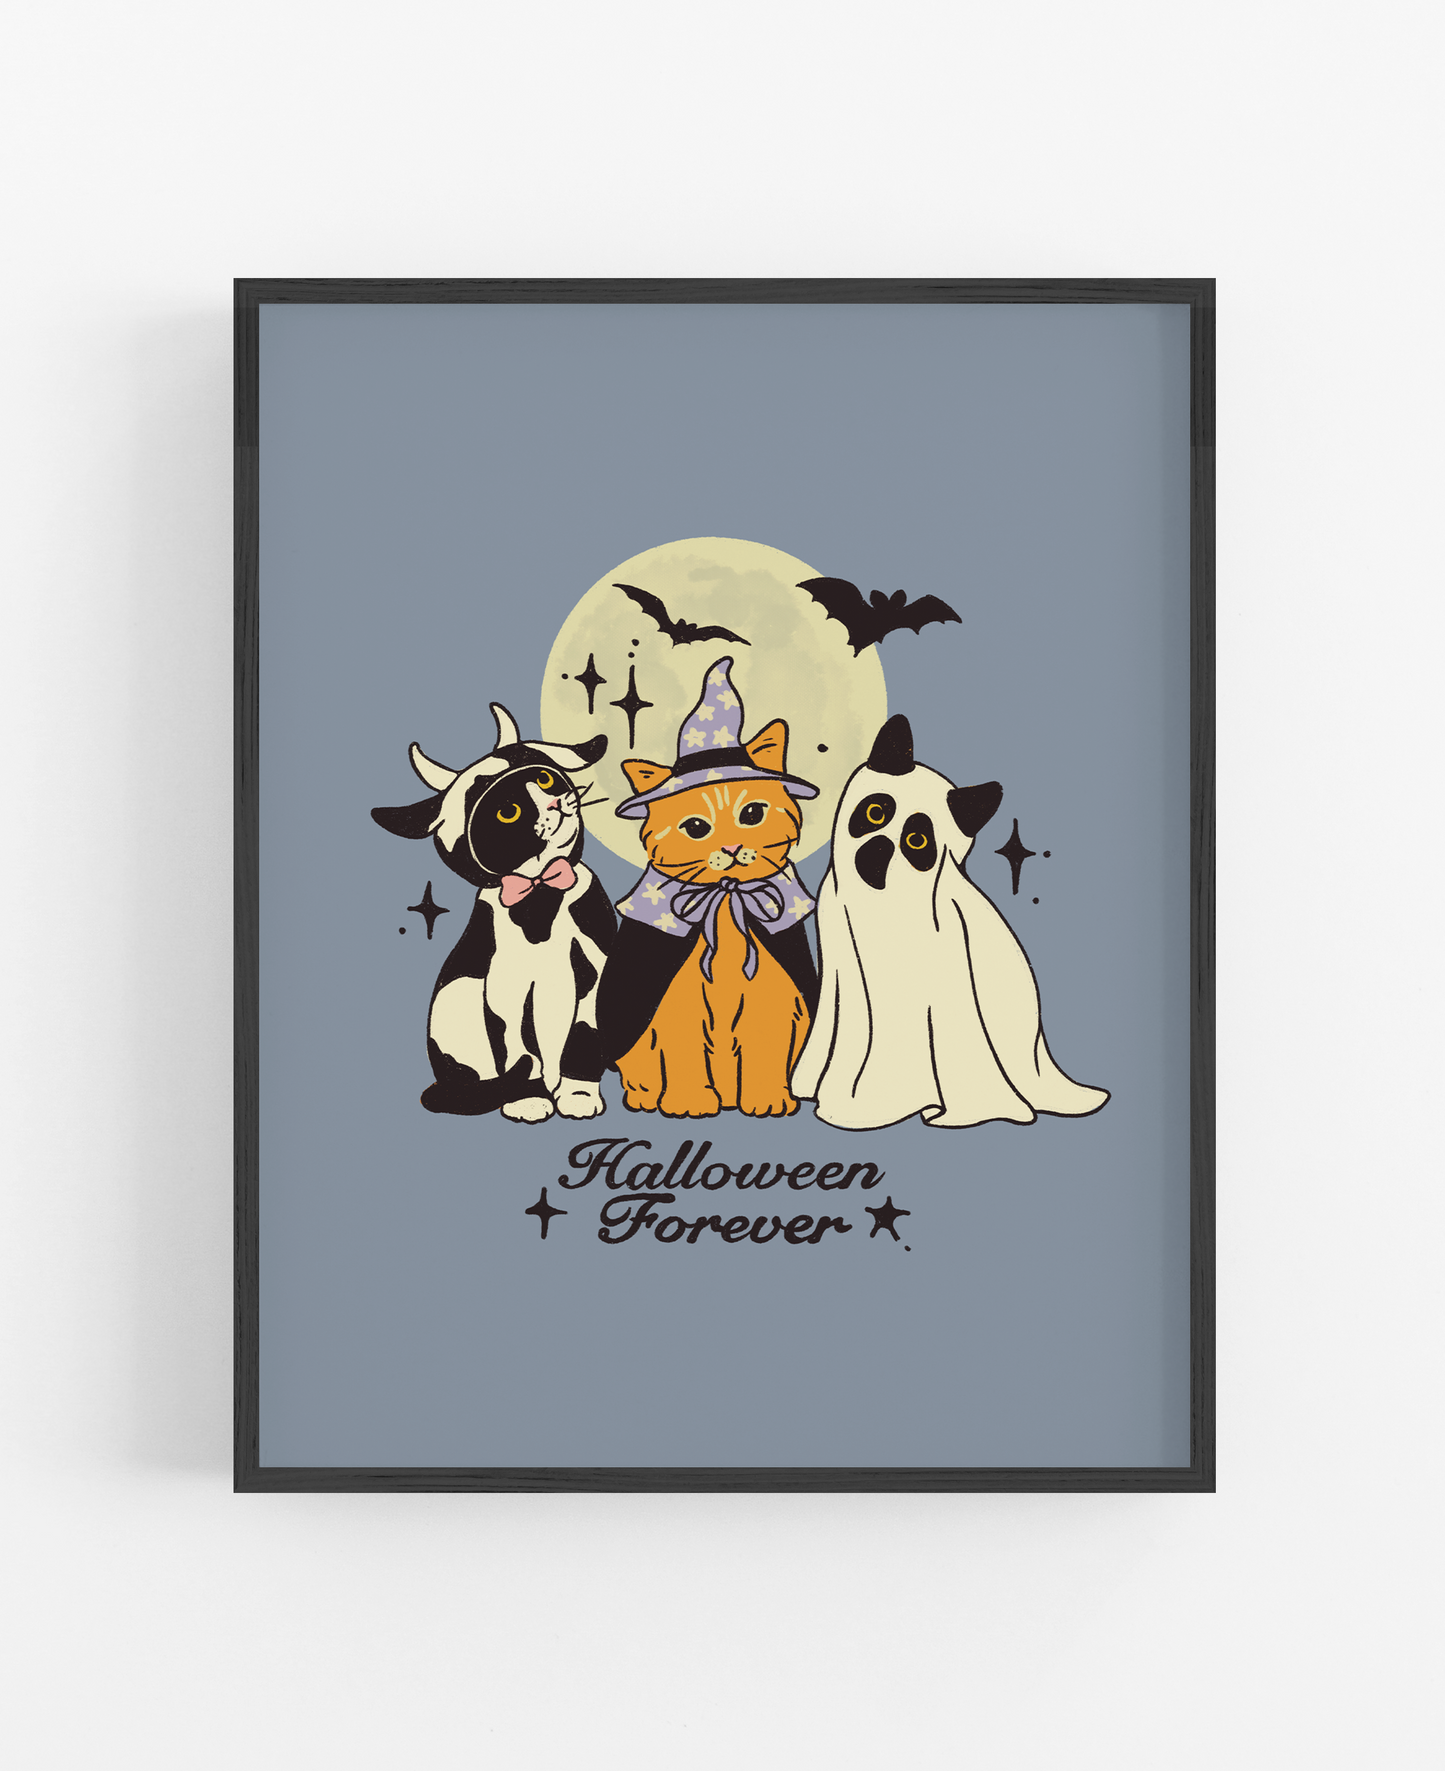 Halloween Forever Print